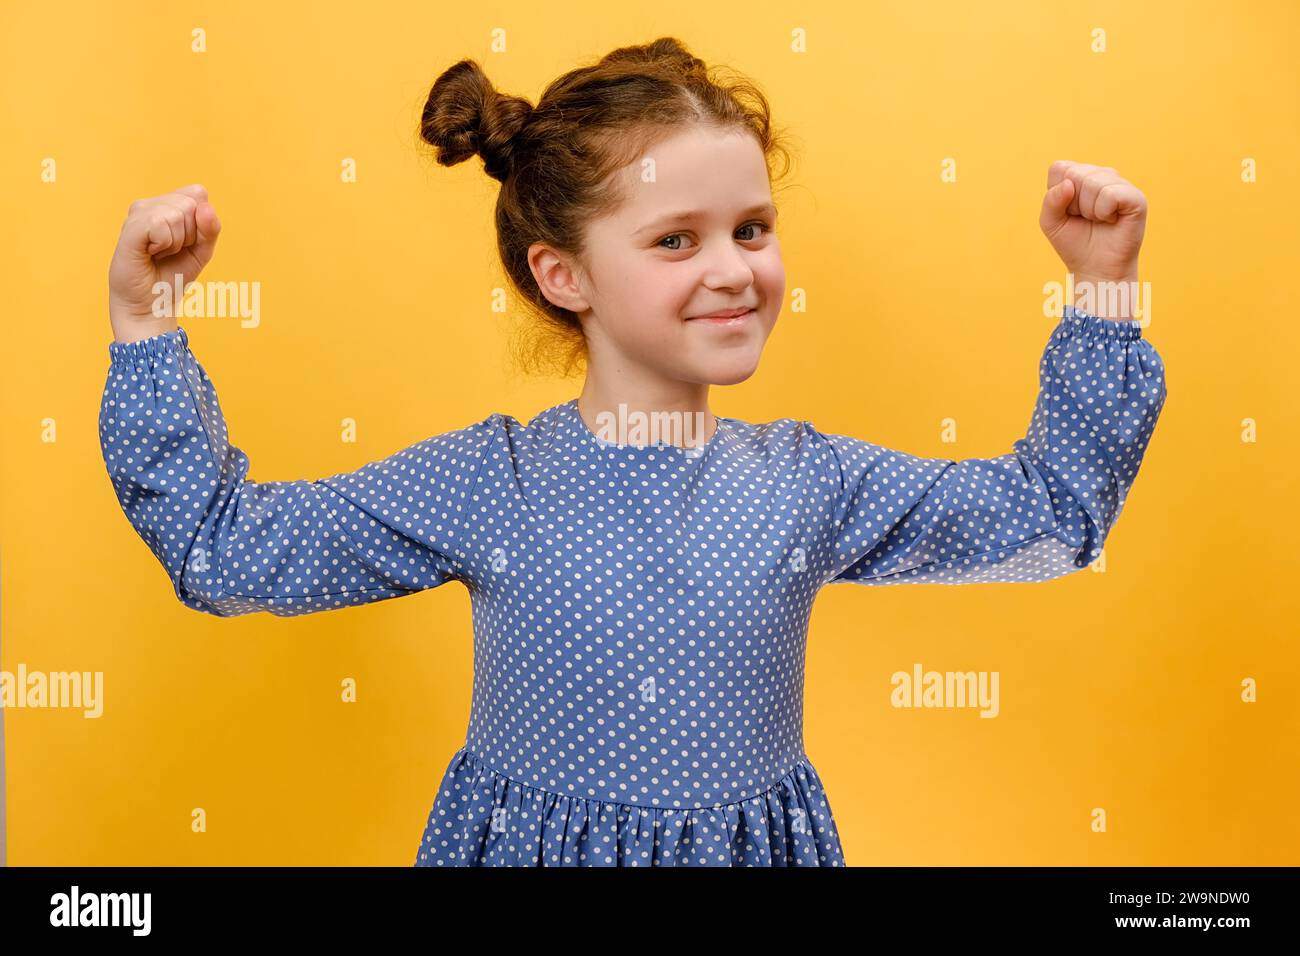 Portrait de petite fille confiante souriant joyeusement et levant les poings serrés, tendant les muscles, se sentant forte et pleine d'énergie après avoir mangé Healt Banque D'Images